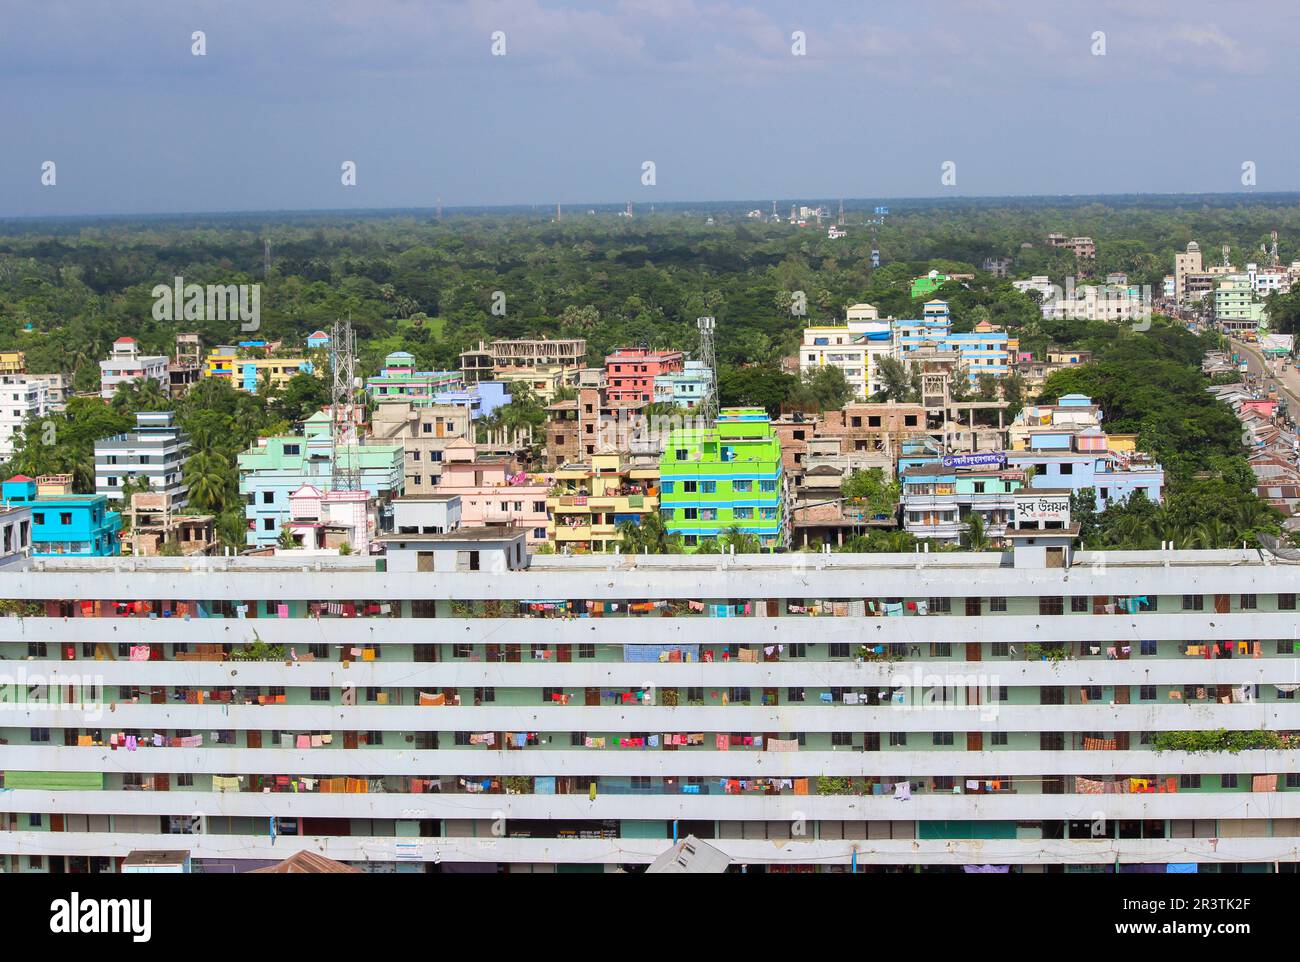 Urbanisierung. Chowmuhani Noakhali, Bangladesch aus der Vogelperspektive. Diskriminierung in den Städten. Stockfoto